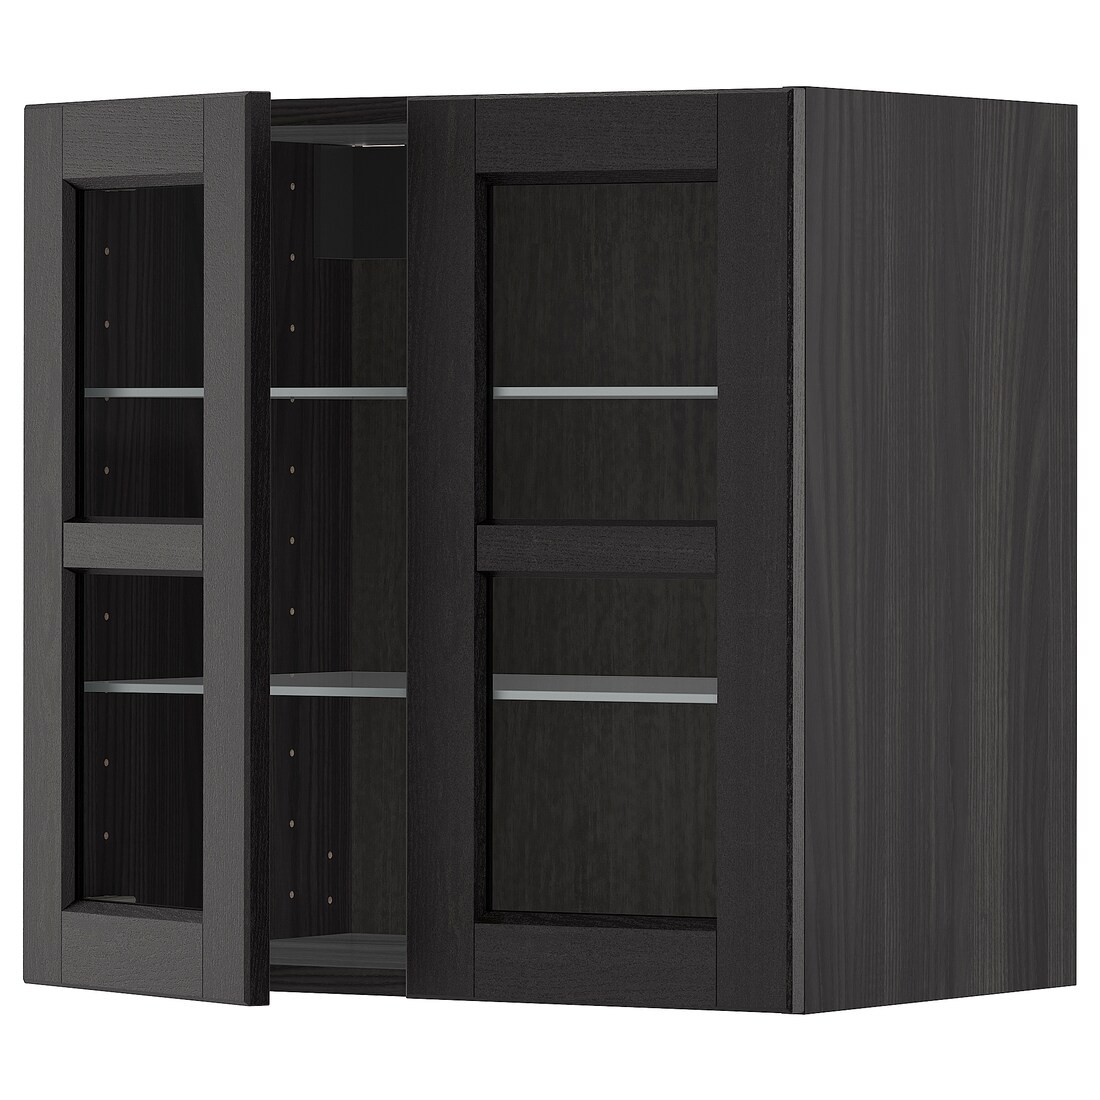 IKEA METOD МЕТОД Навесной шкаф, черный / Lerhyttan черная морилка, 60x60 см 19457099 194.570.99